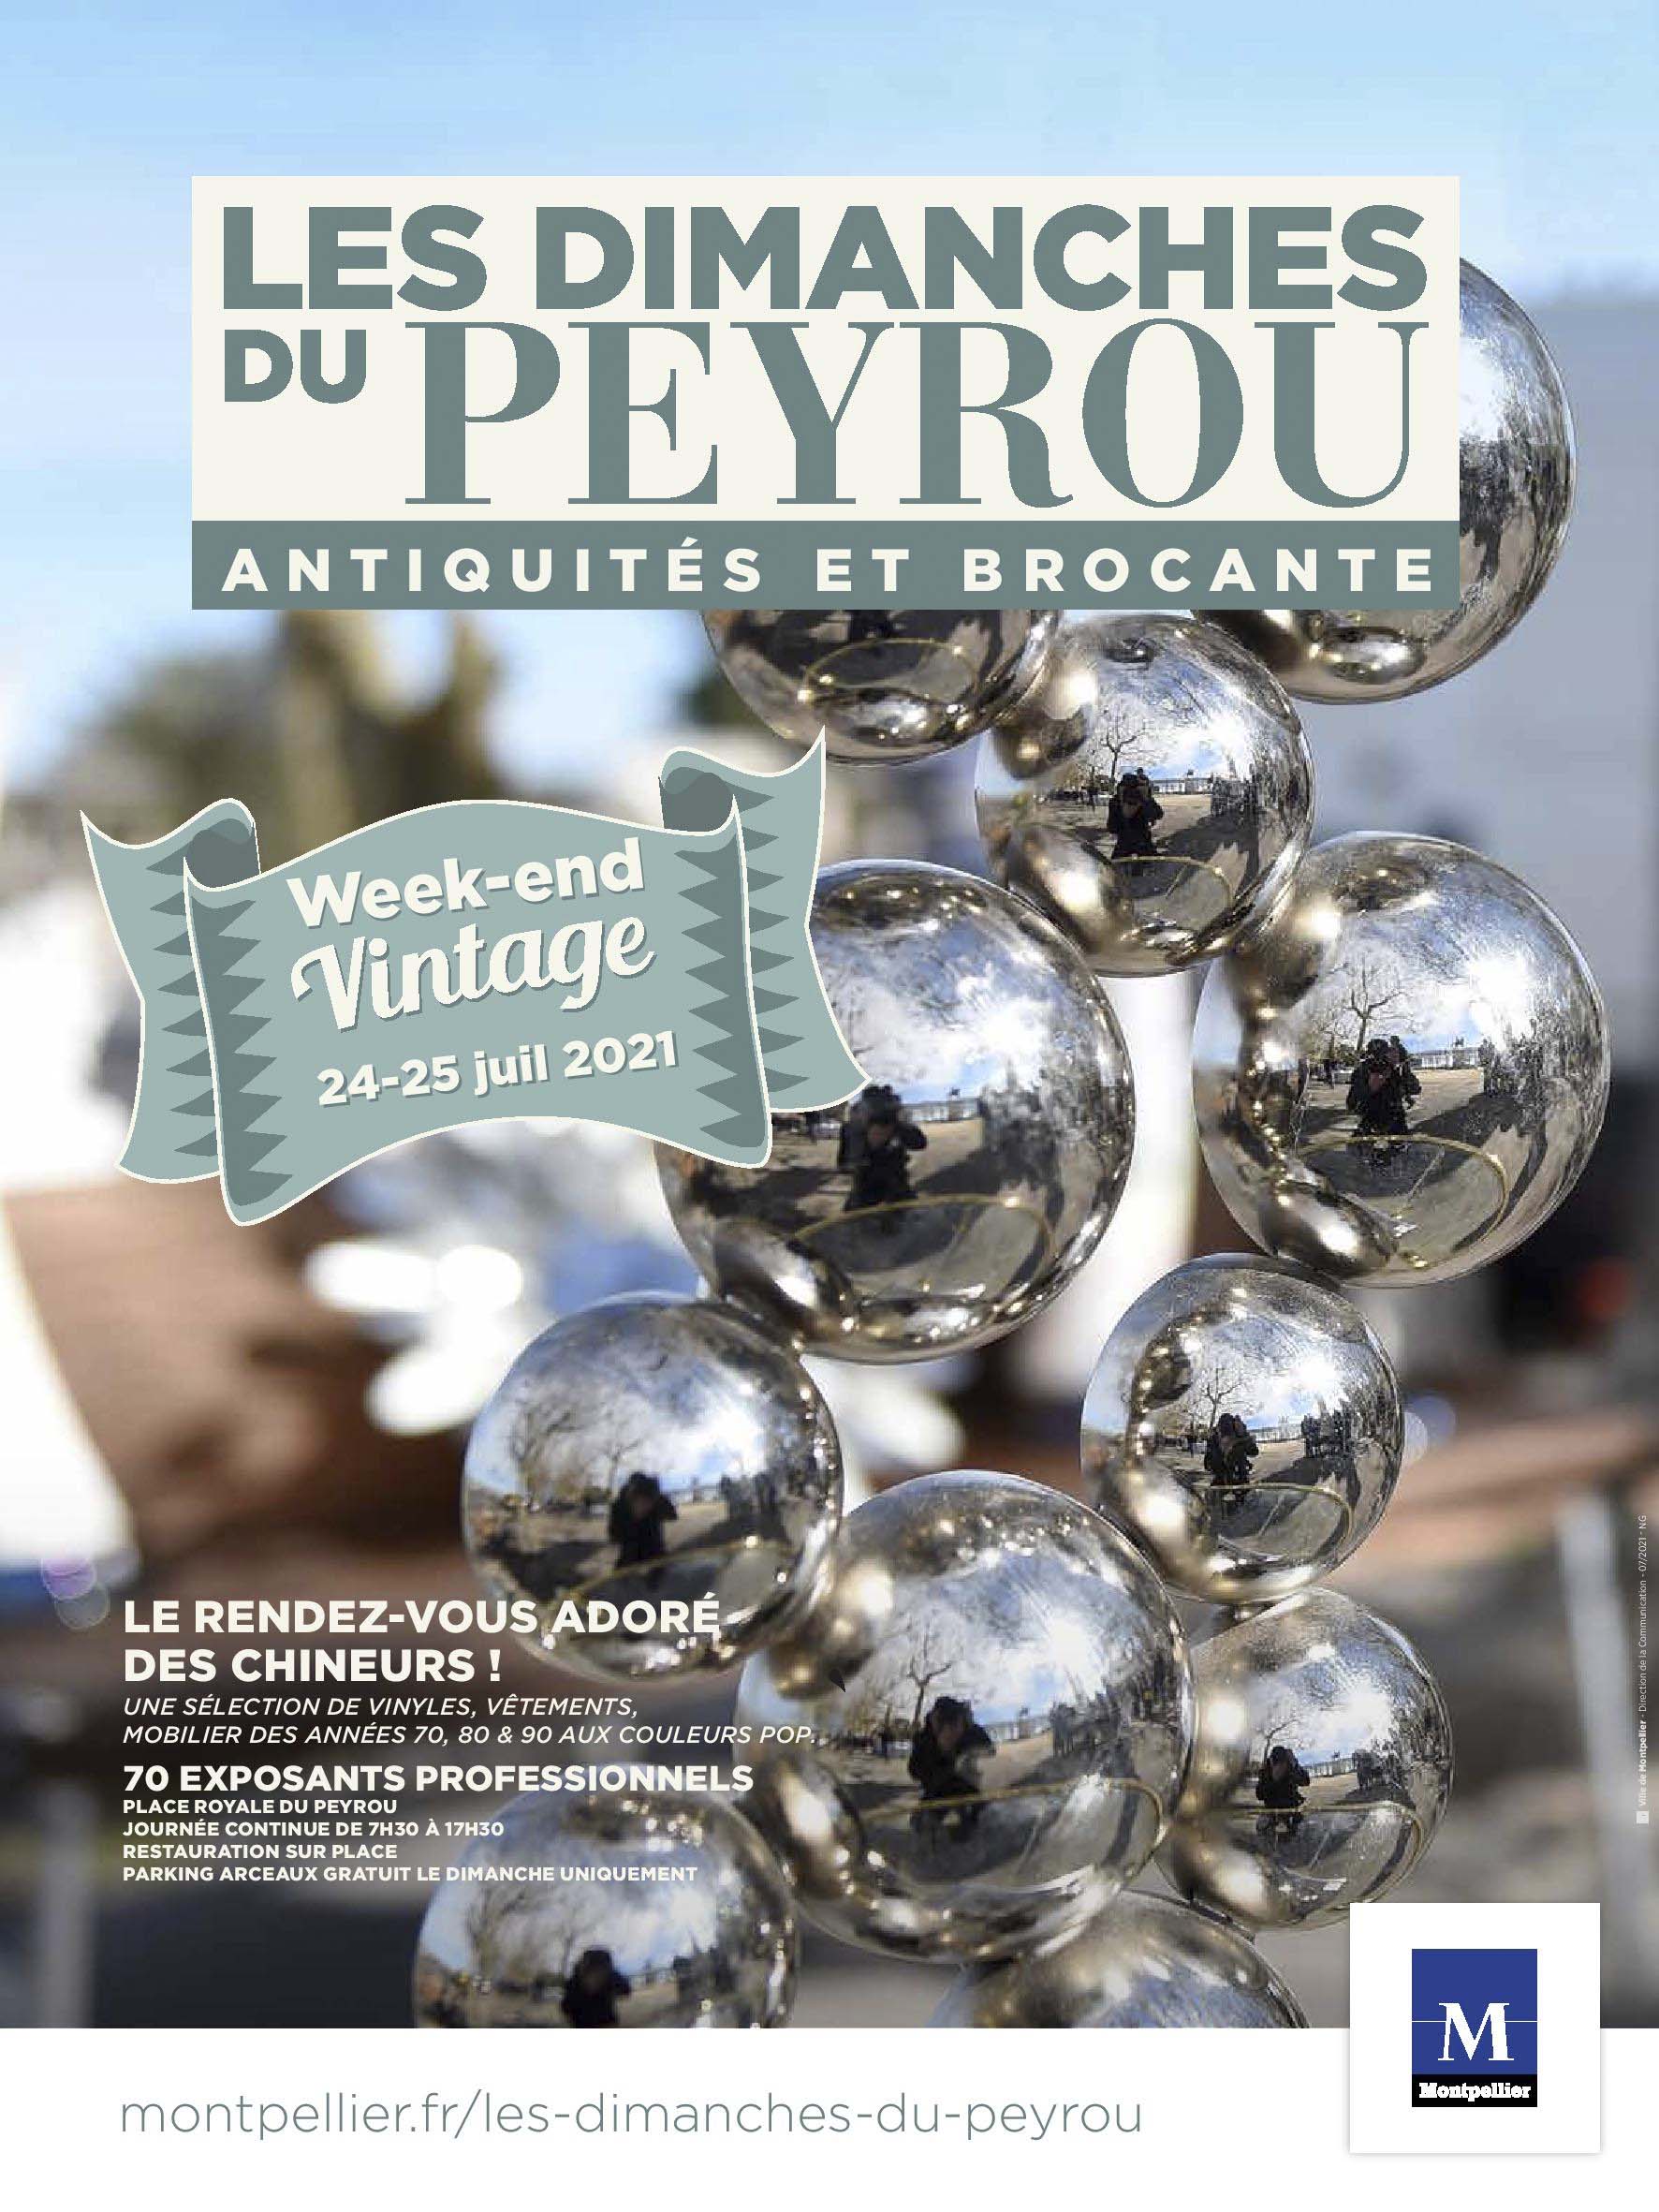 Communiqué de presse : les Dimanches du Peyrou proposent leur Week-end vintage les 24 et 25 juillet 2021